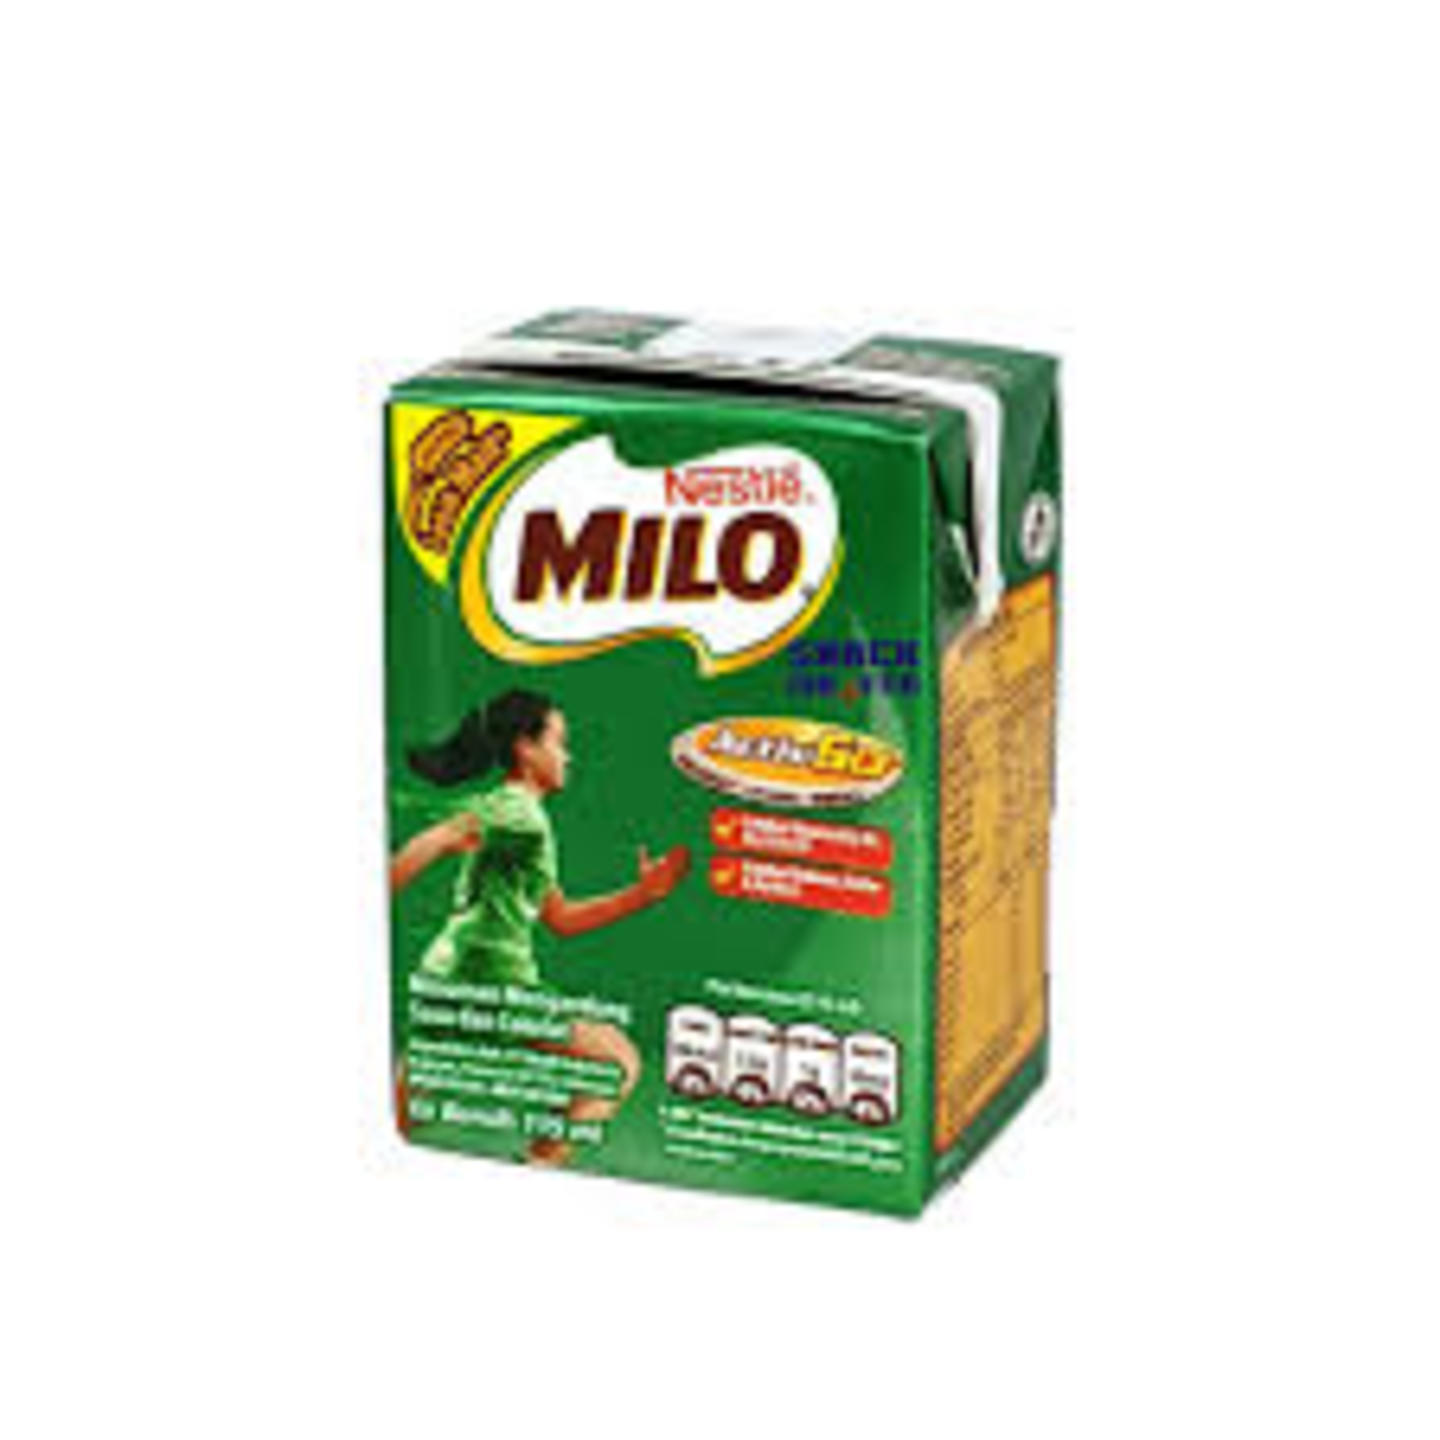 Add on Mini Milo